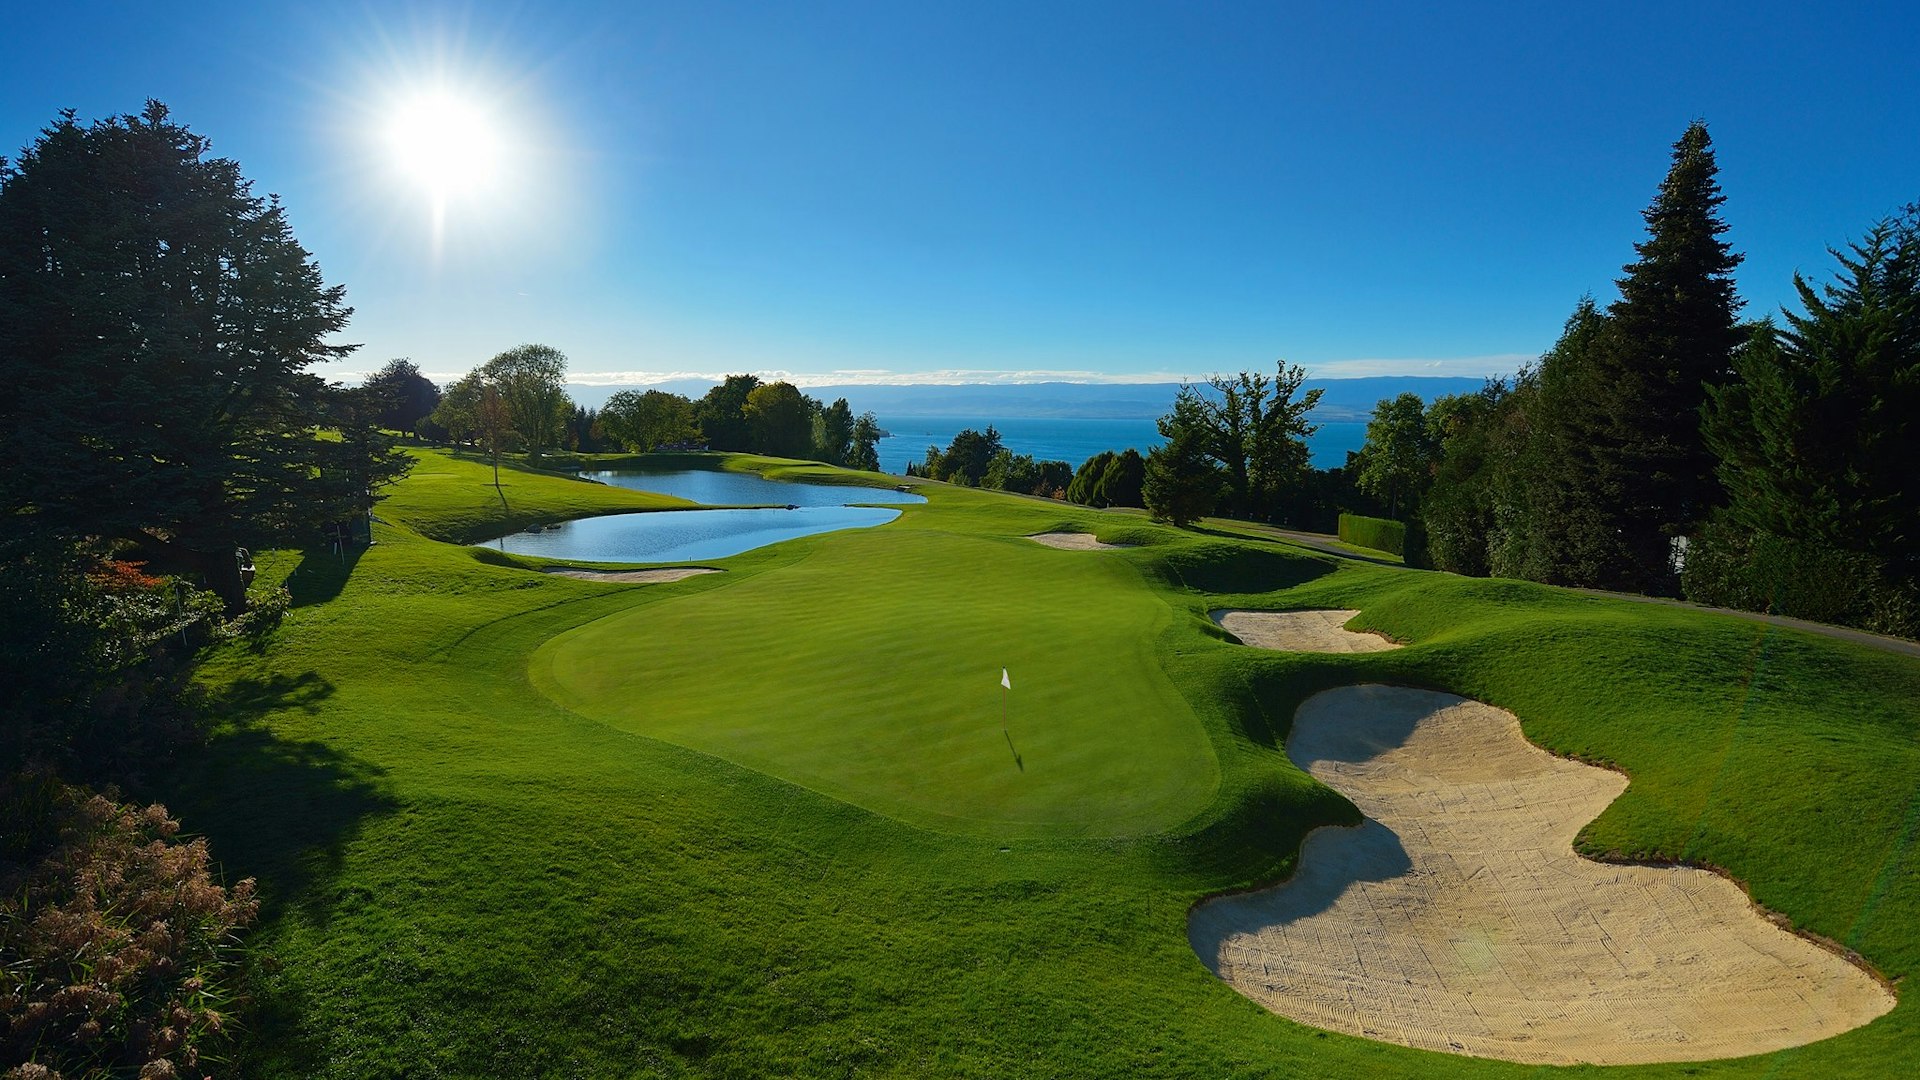 Le Golf de la semaine : Evian Resort Golf Club